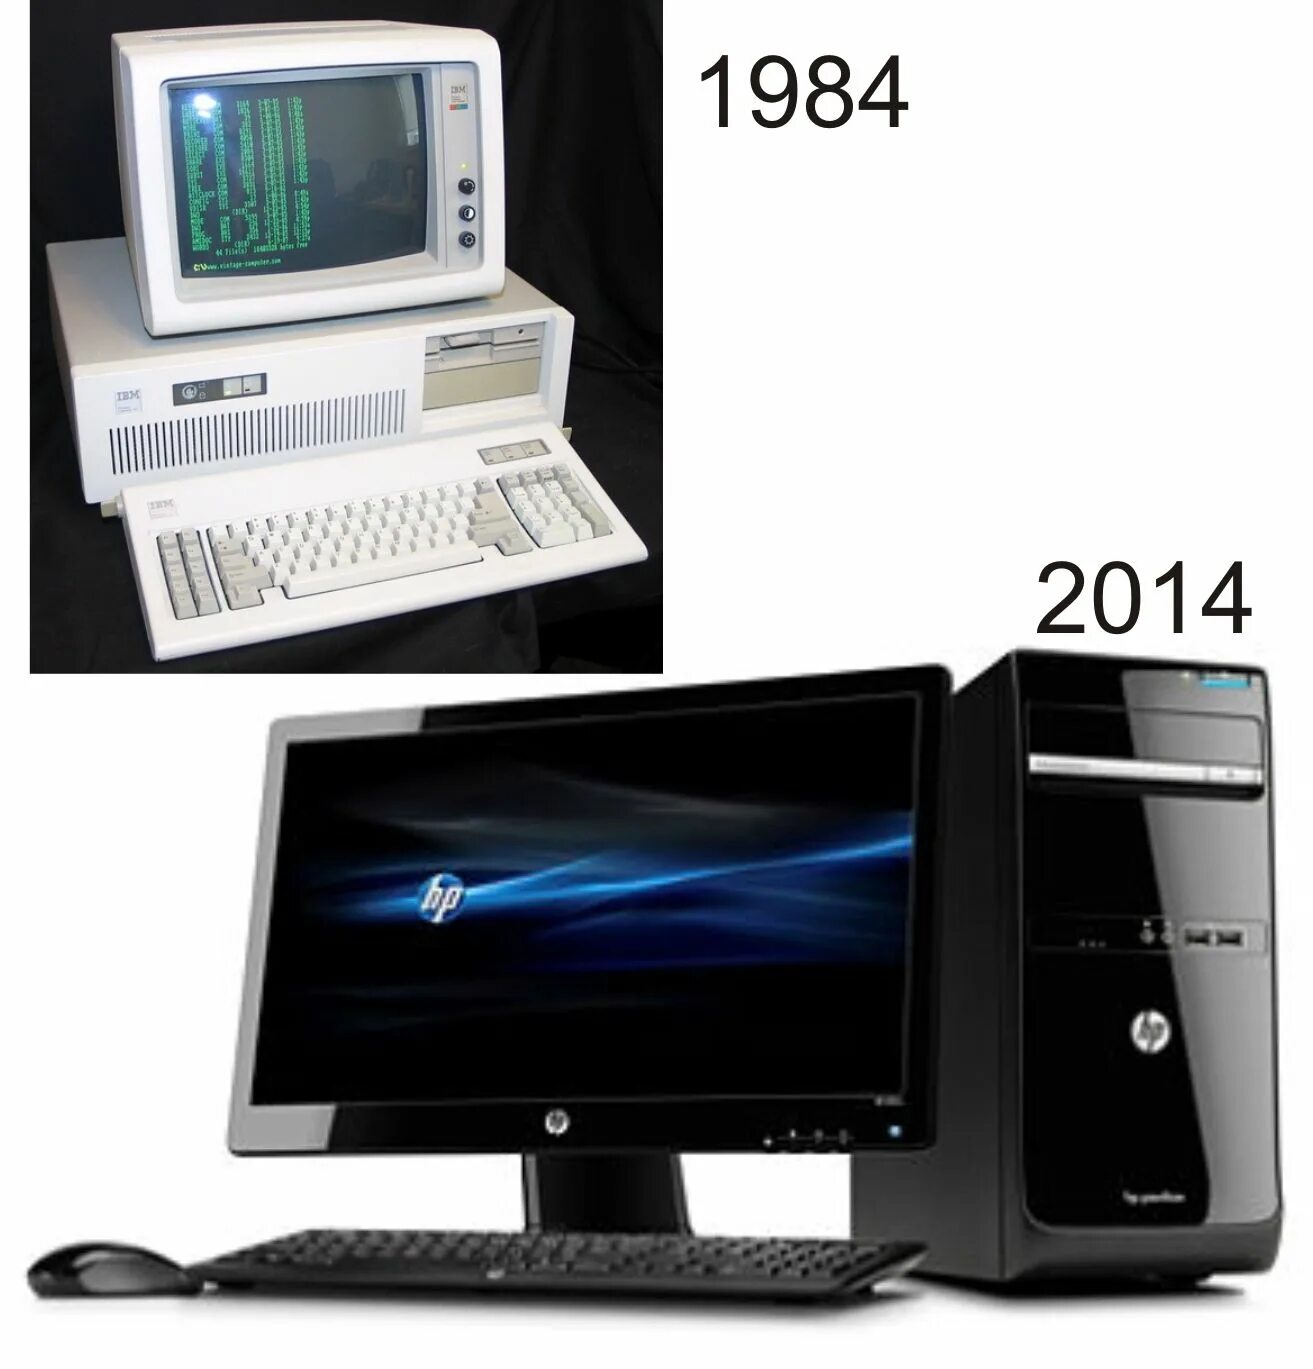 Компьютеры 5 поколения. ЭВМ 5-го поколения. Пятое поколение ЭВМ. Компьютеры пятого поколения ЭВМ. Компьютеры 5 поколения ЭВМ.